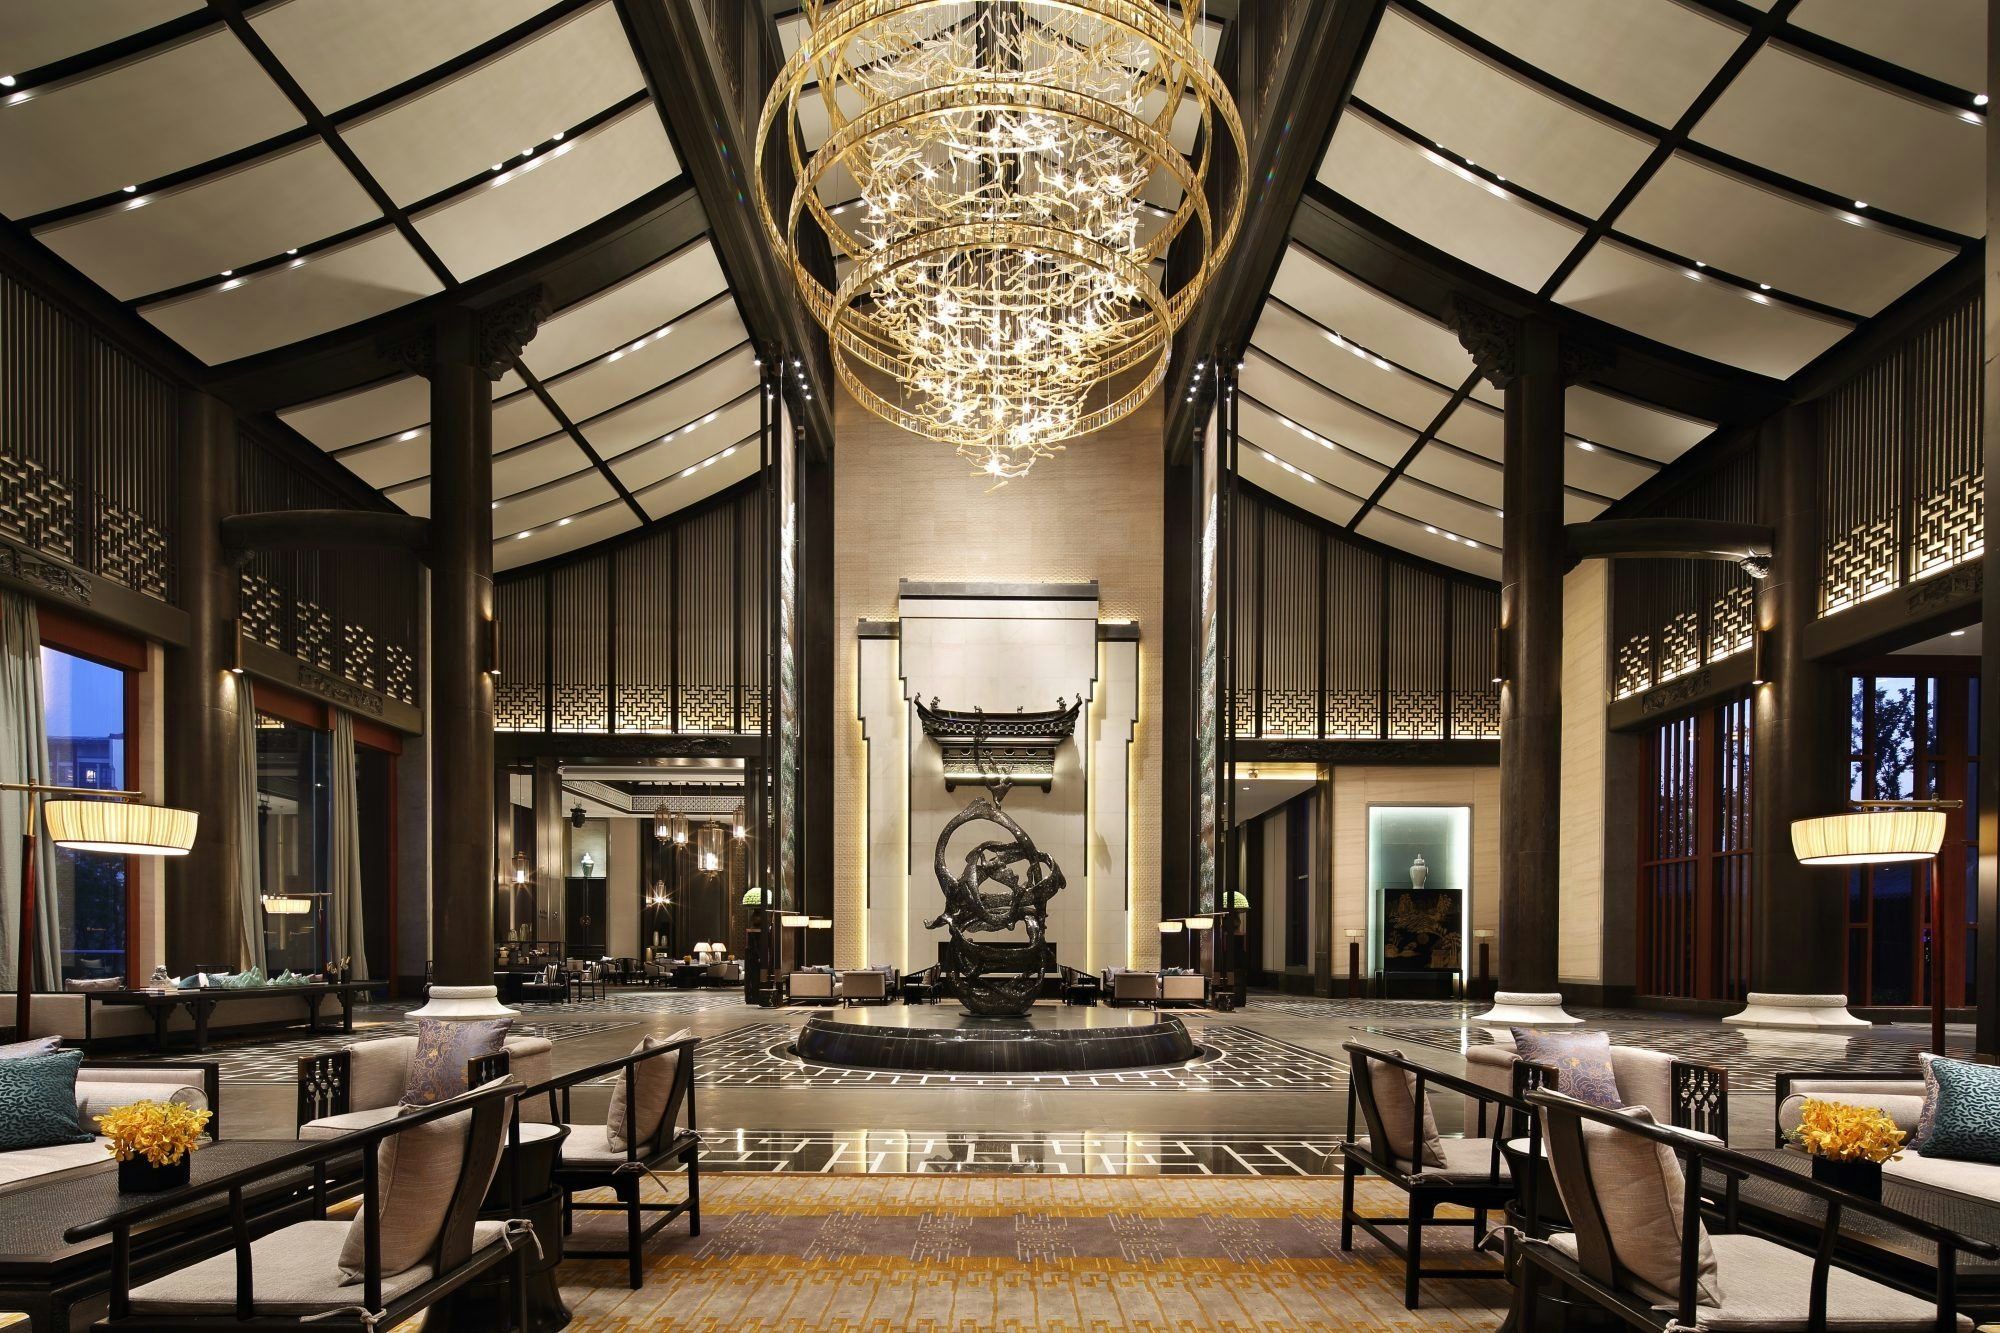 The lobby of Wanda Vista Hotel in Hefei, Anhui Province. (Courtesy Photo)